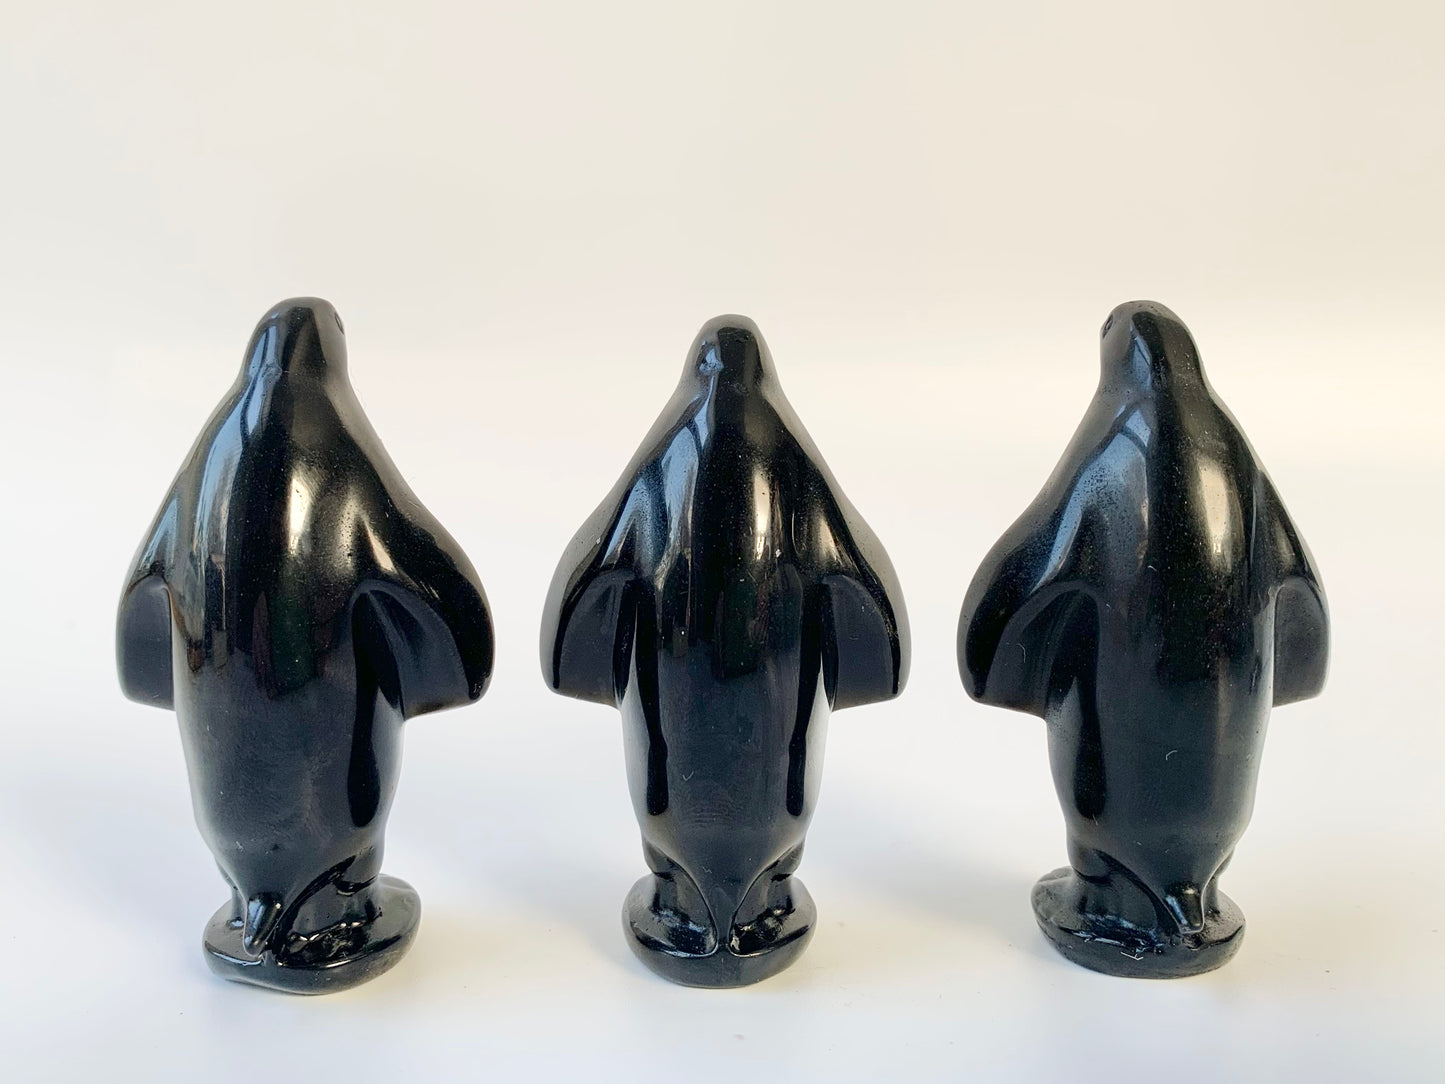 Penguin Carving, Black Obsidian